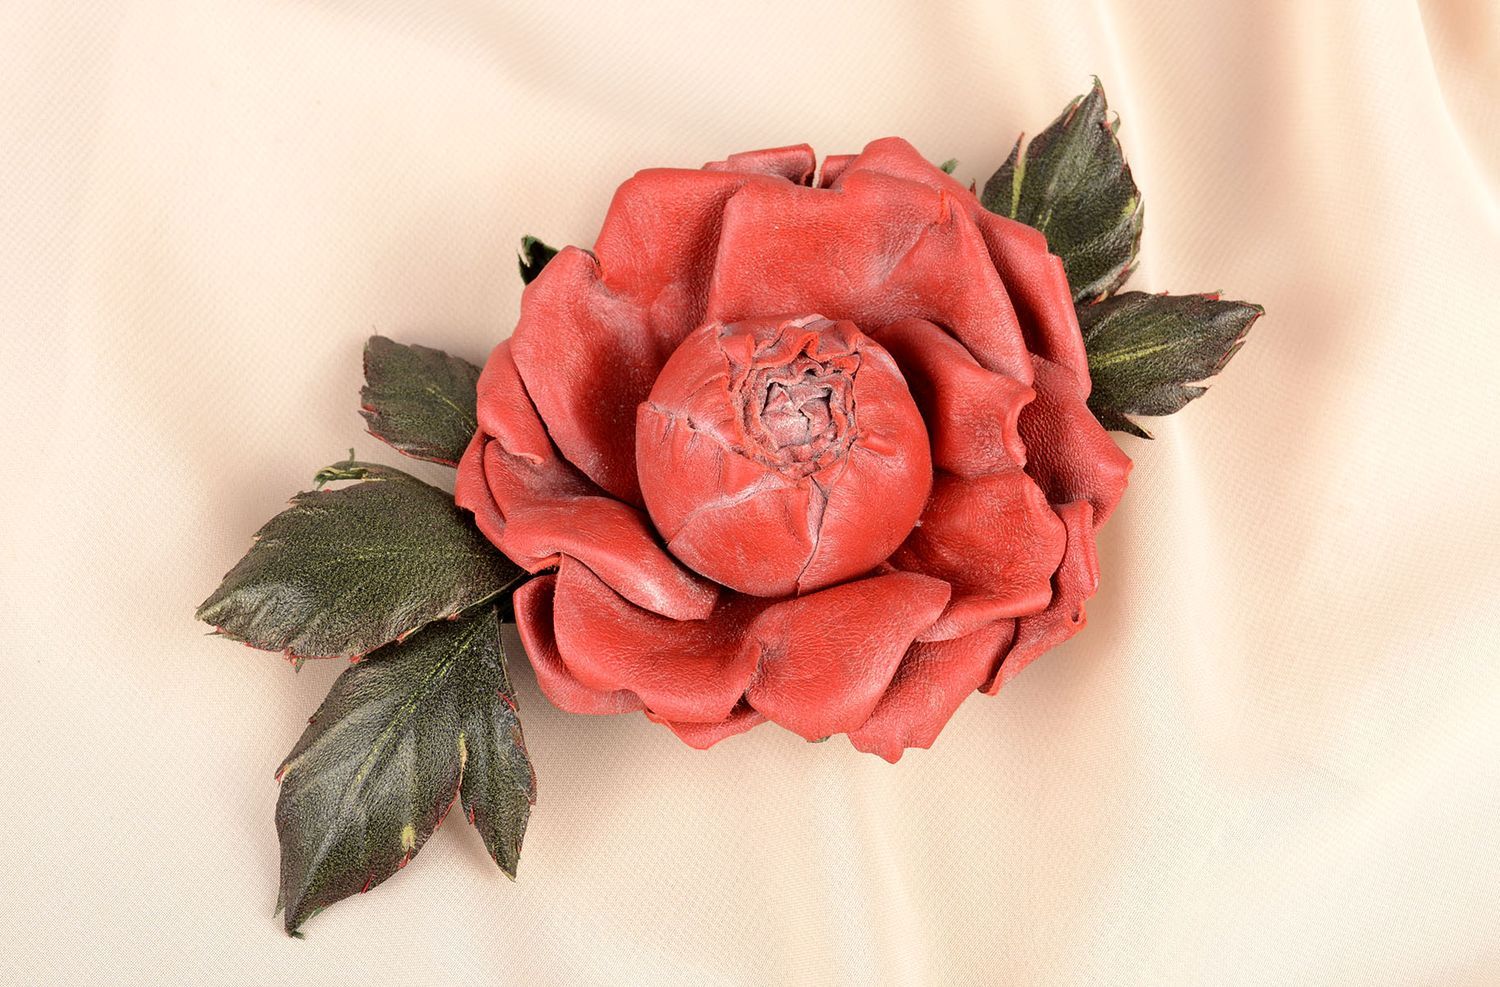 Брошь ручной работы красивая красная брошь-цветок авторское кожаное украшение фото 5